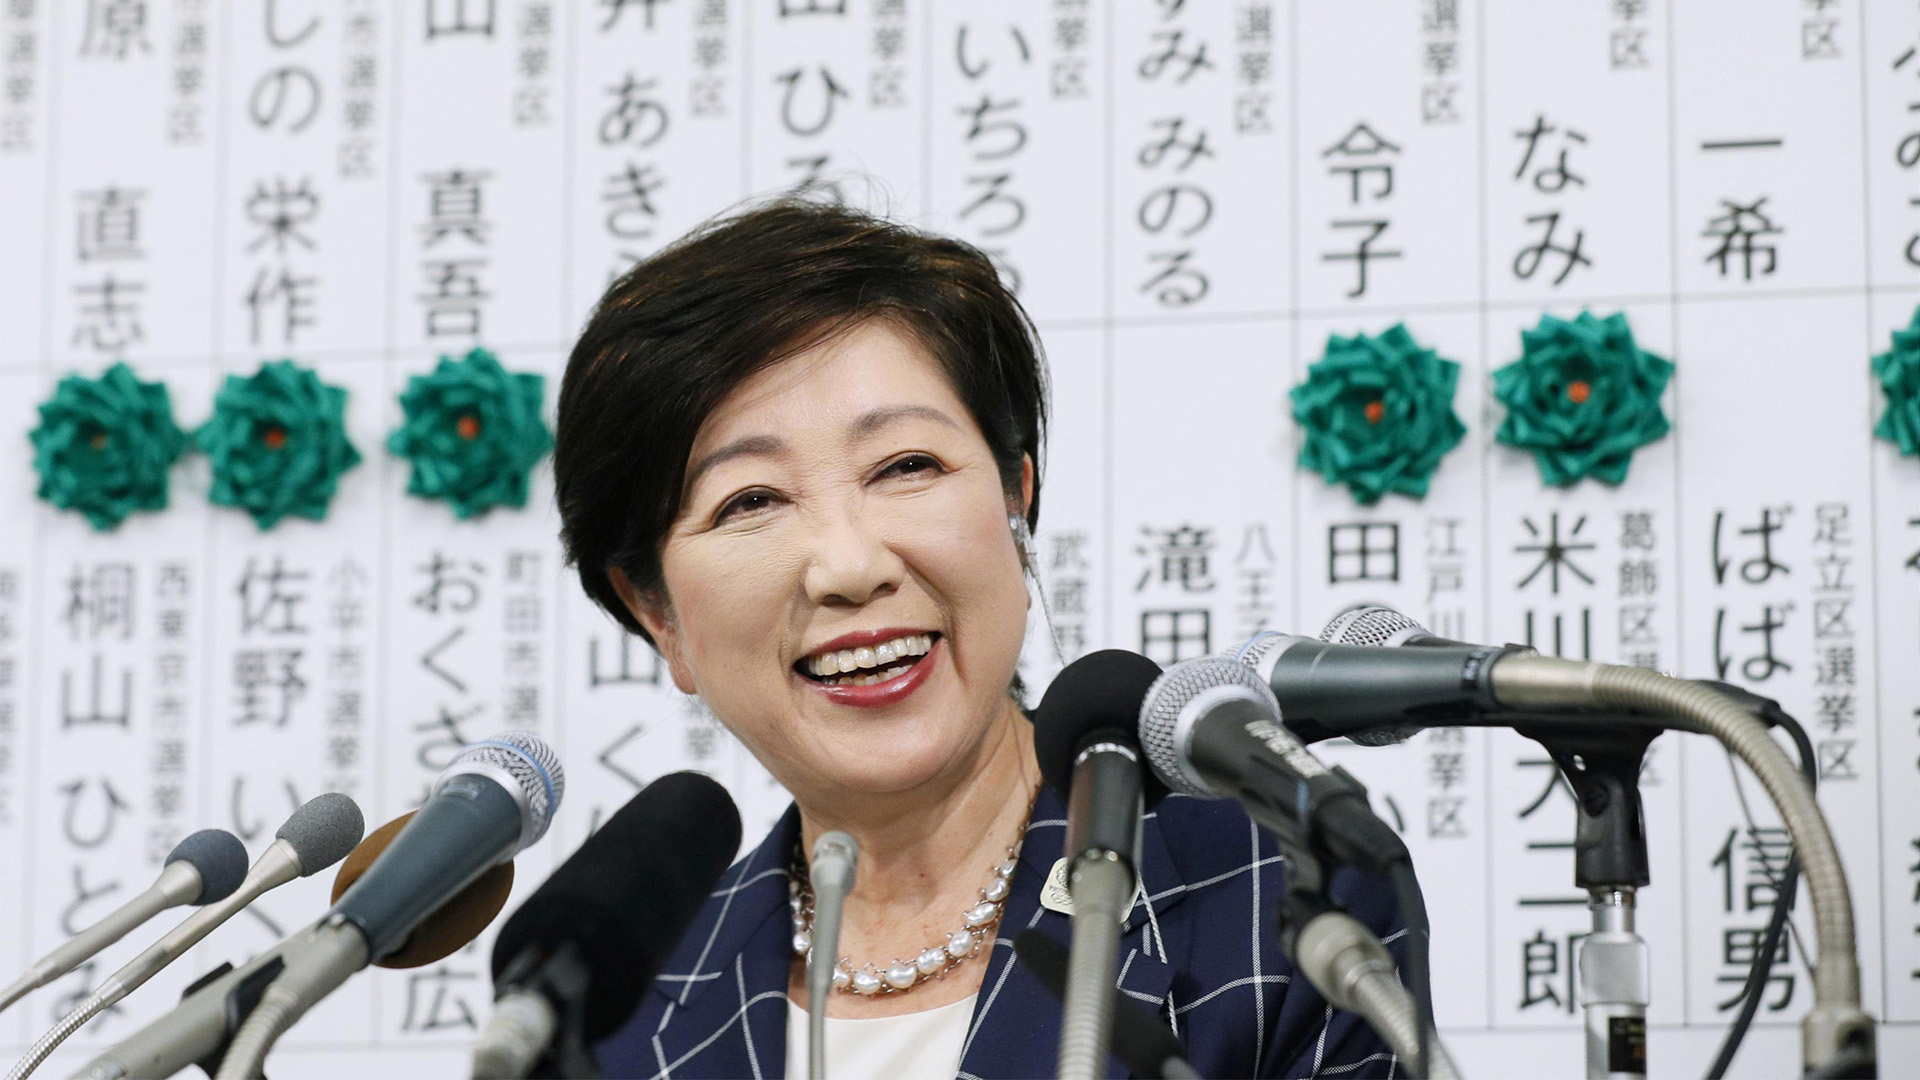 La gobernadora de Tokio quiere acabar con el tabaquismo antes de los Juegos de 2020